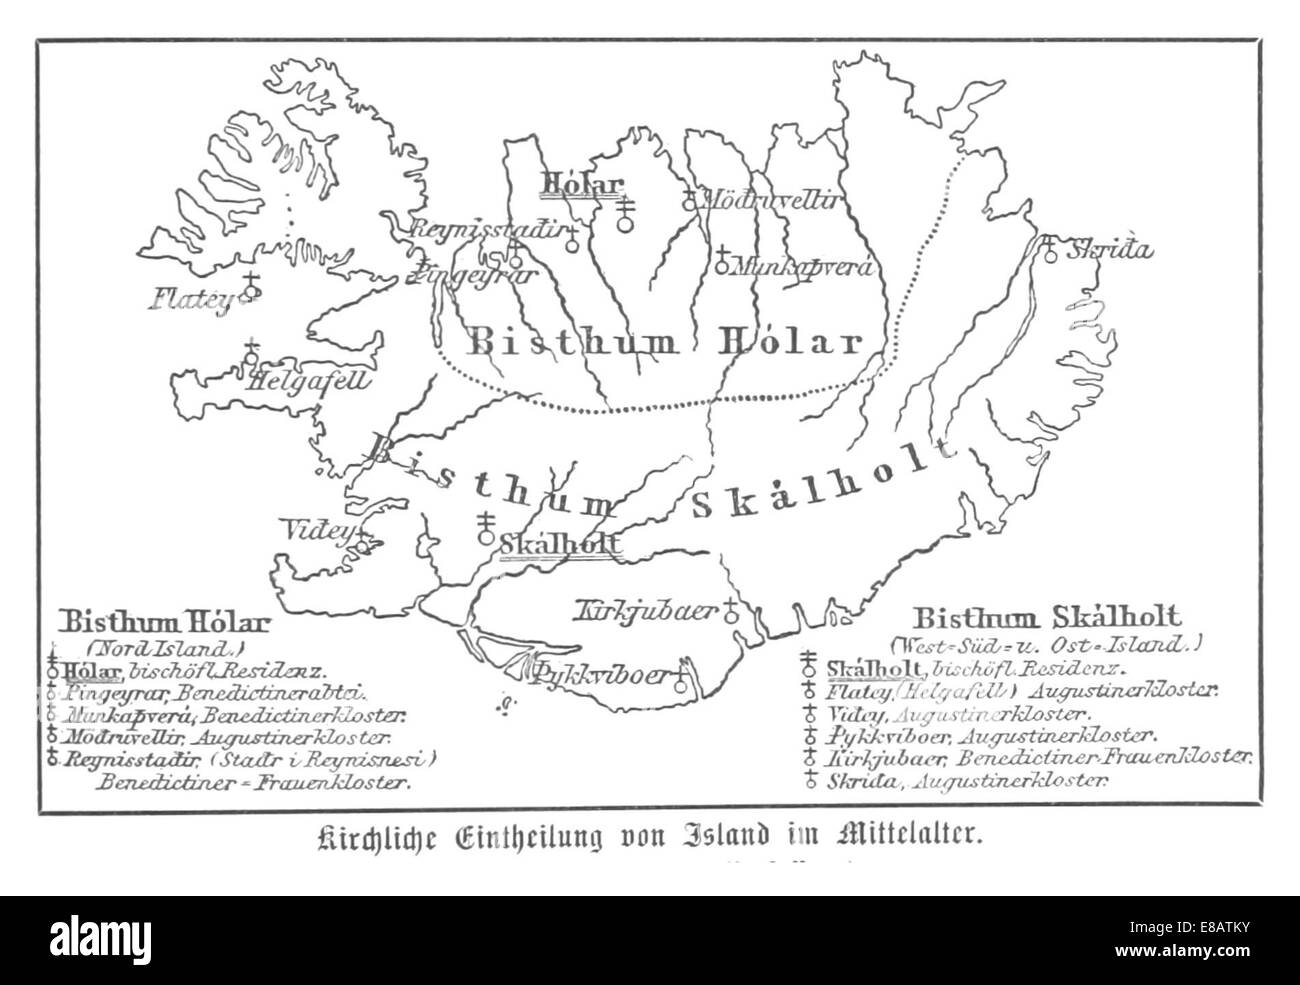 (Baumg1889) (BistC Kirchliche Einteilung3BCmer) Islas im Mittelalter Foto de stock